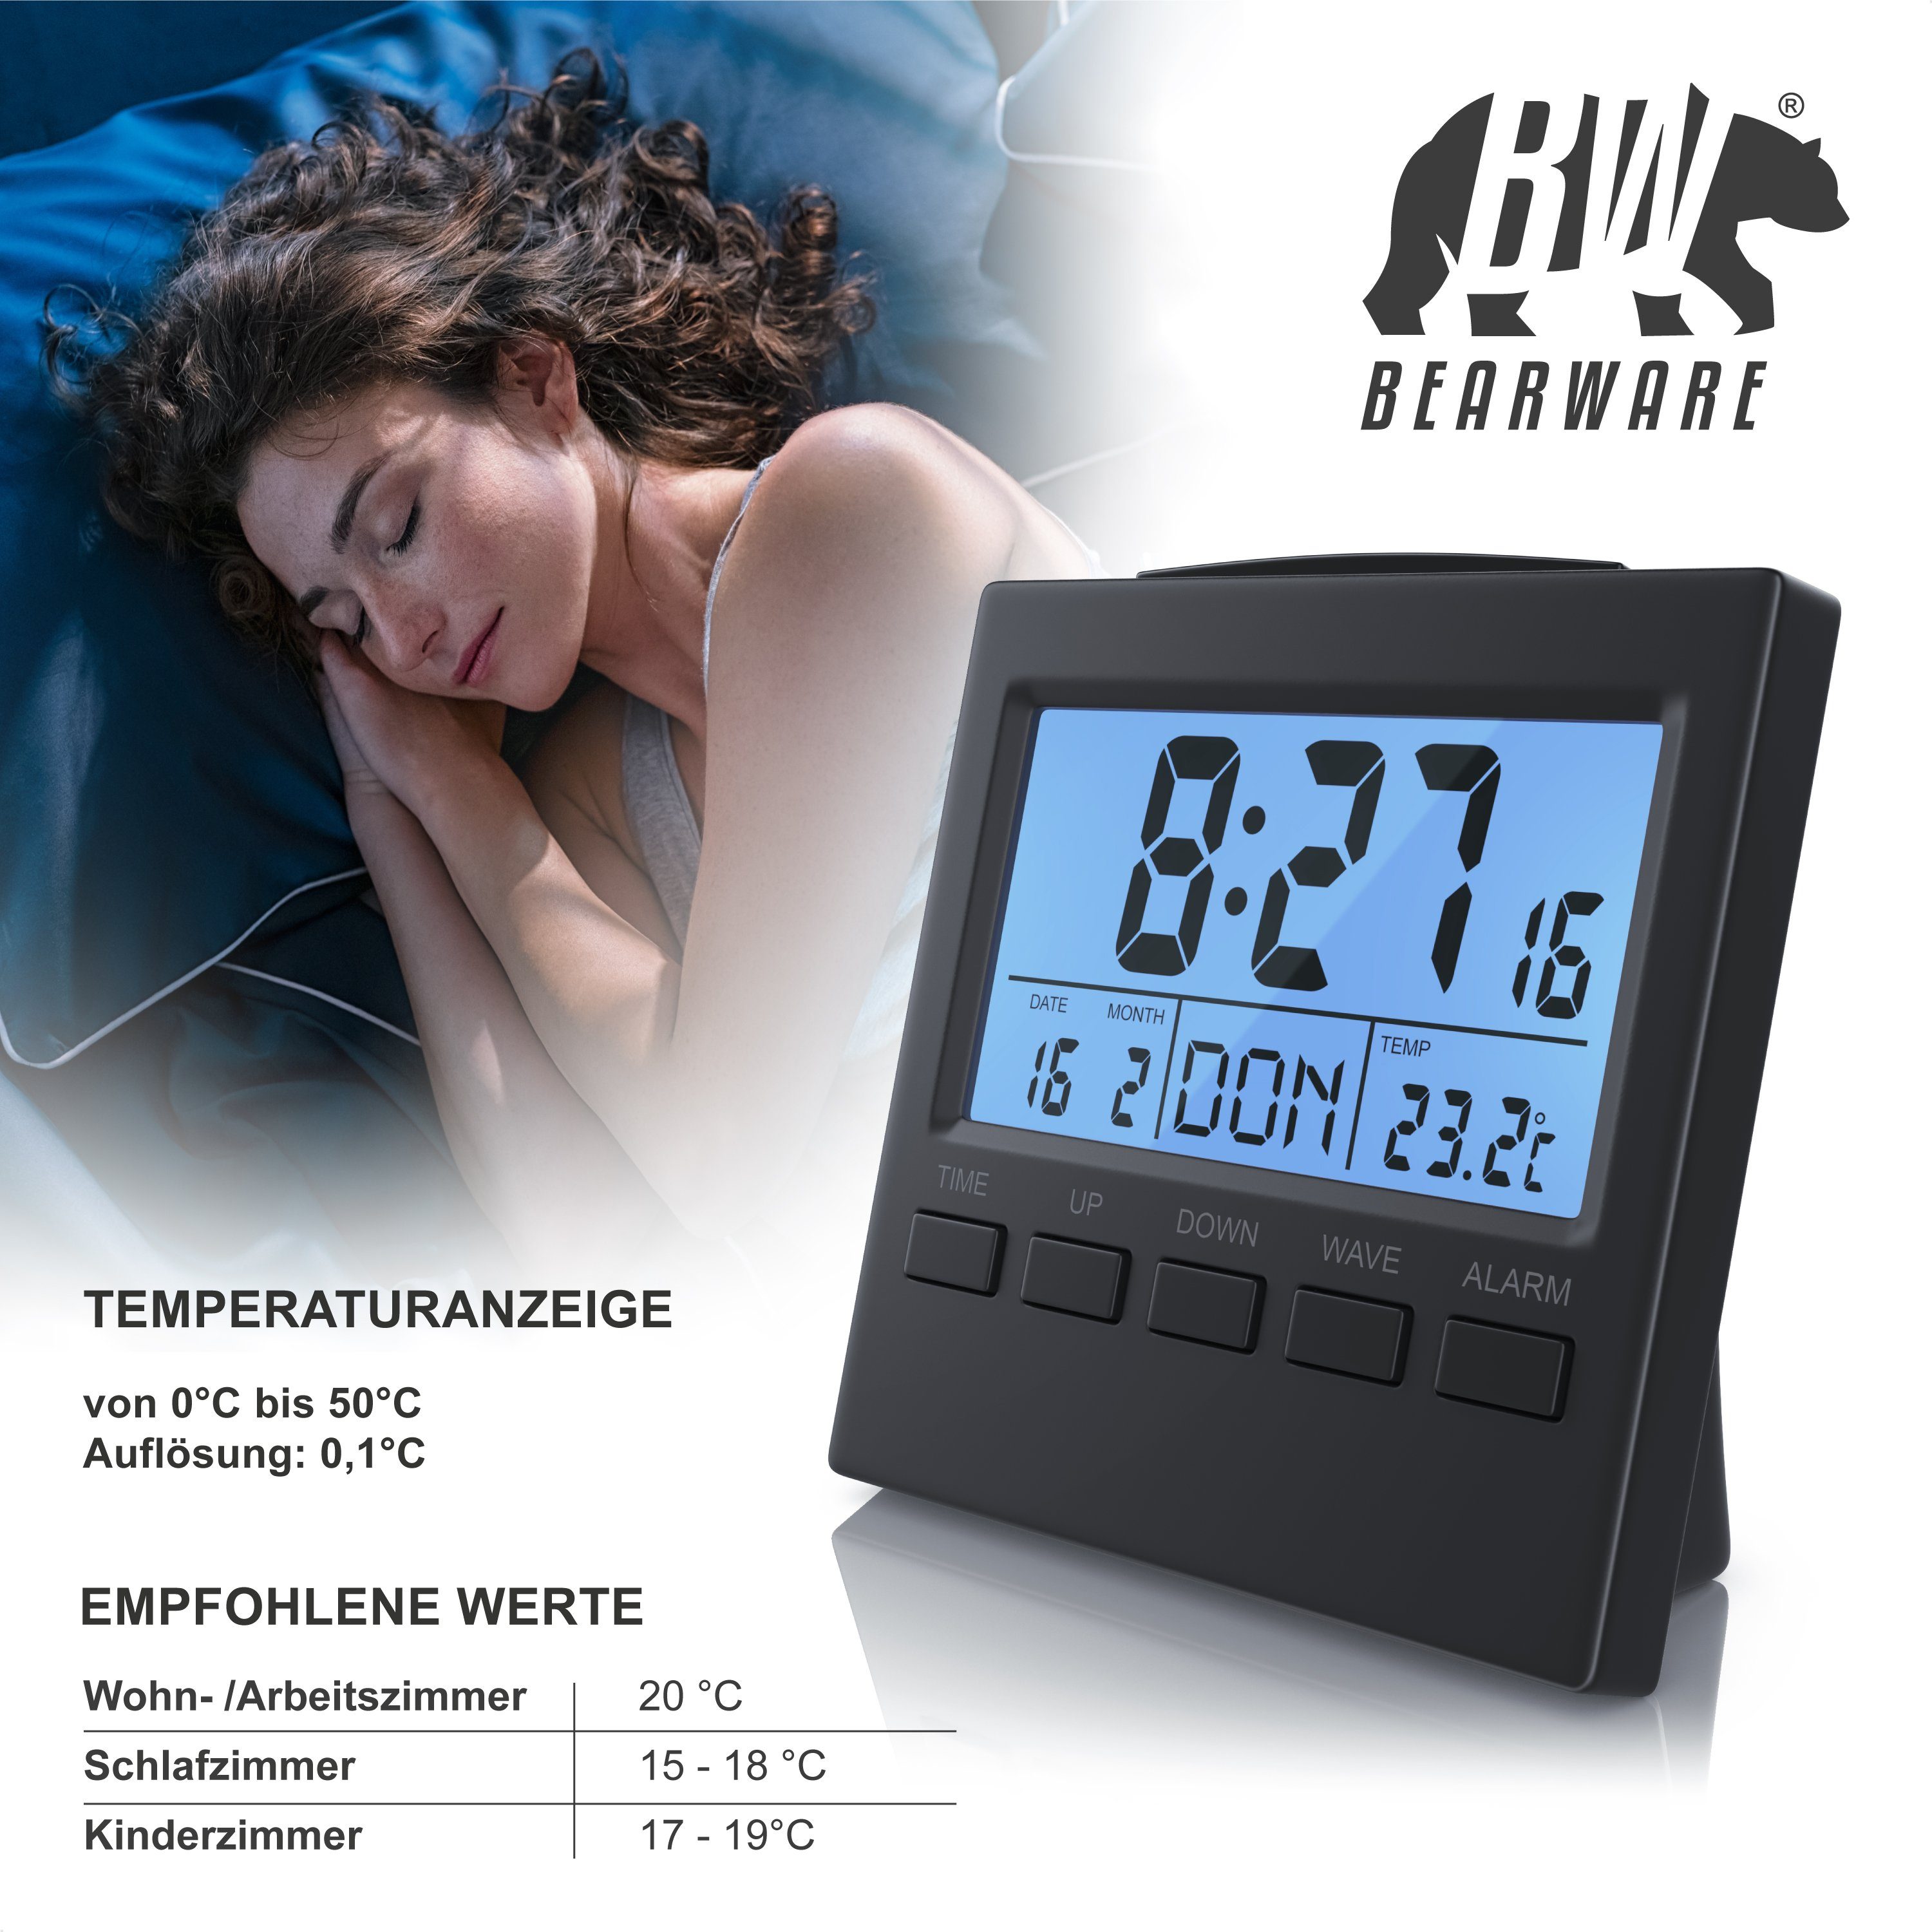 BEARWARE Digital-Funkwecker, DCF-Funkuhr Wecker Datumsanzeige Temperaturanzeige, Innen